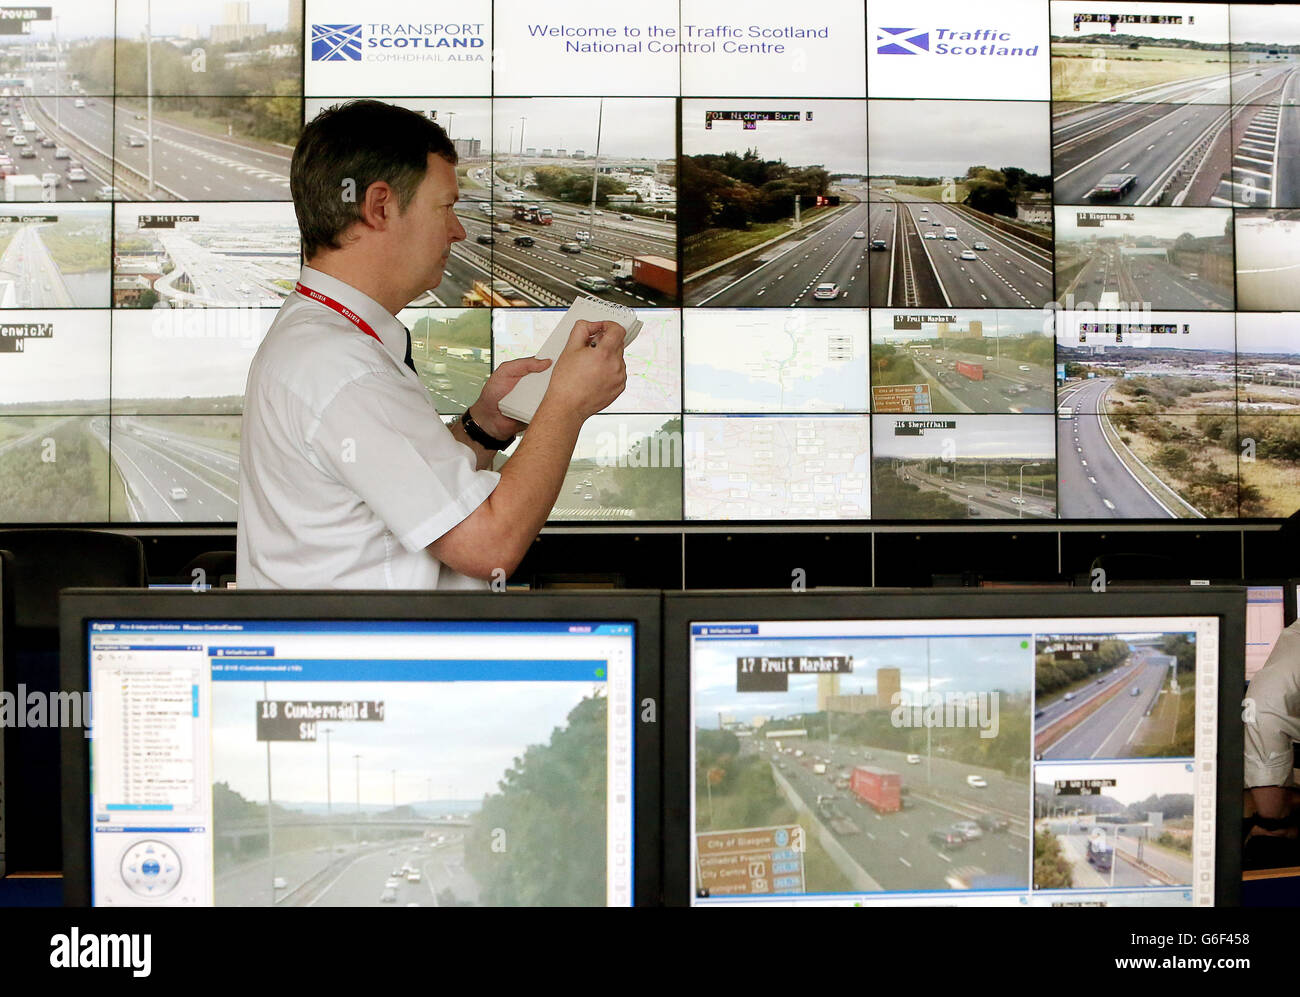 Der Verkehrskontrolleur Pat O'Neill überwacht den Verkehr während der Inbetriebnahme des Transport Scotland Winter Service im National Traffic Scotland Control Center in South Queensferry. Stockfoto